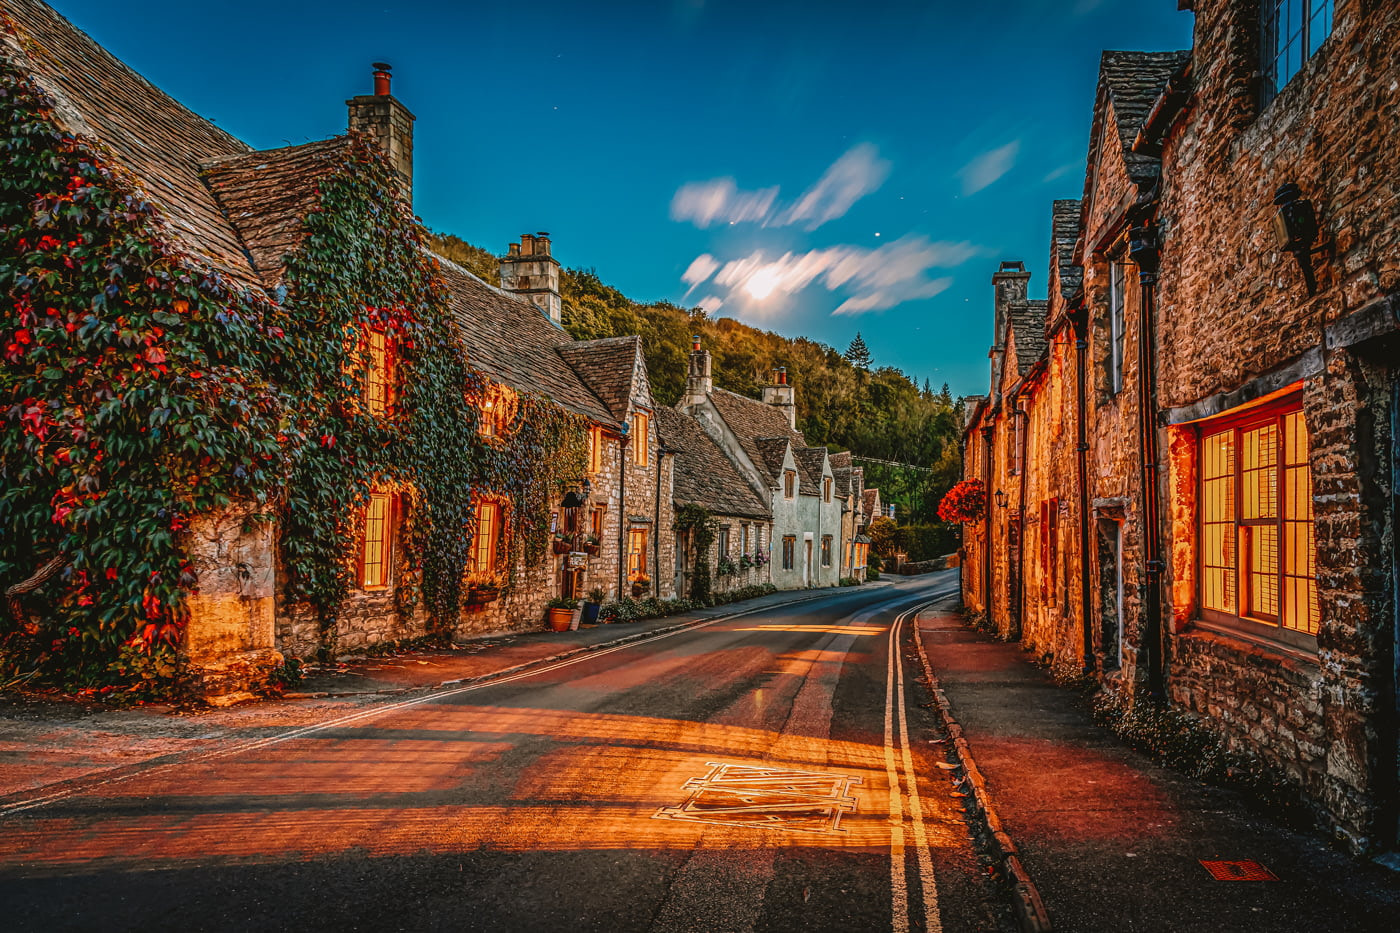 Prettiest village in England